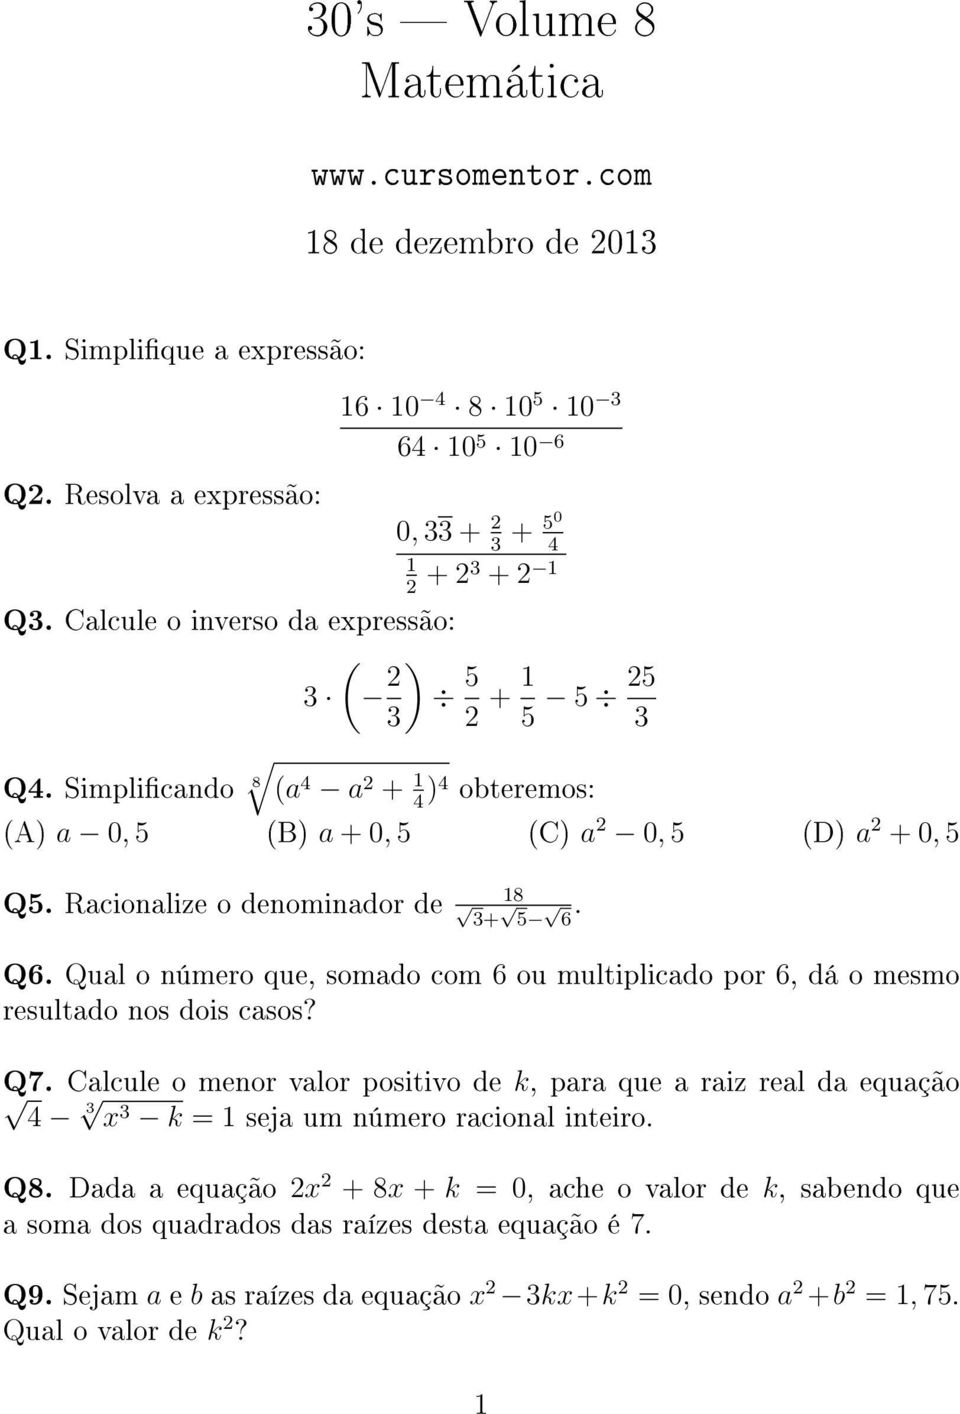 Simplicando 8 (a 4 a 2 + 1 4 )4 obteremos: (A) a 0, 5 (B) a + 0, 5 (C) a 2 0, 5 (D) a 2 + 0, 5 Q5. Racionalize o denominador de 18 3+ 5 6. Q6.